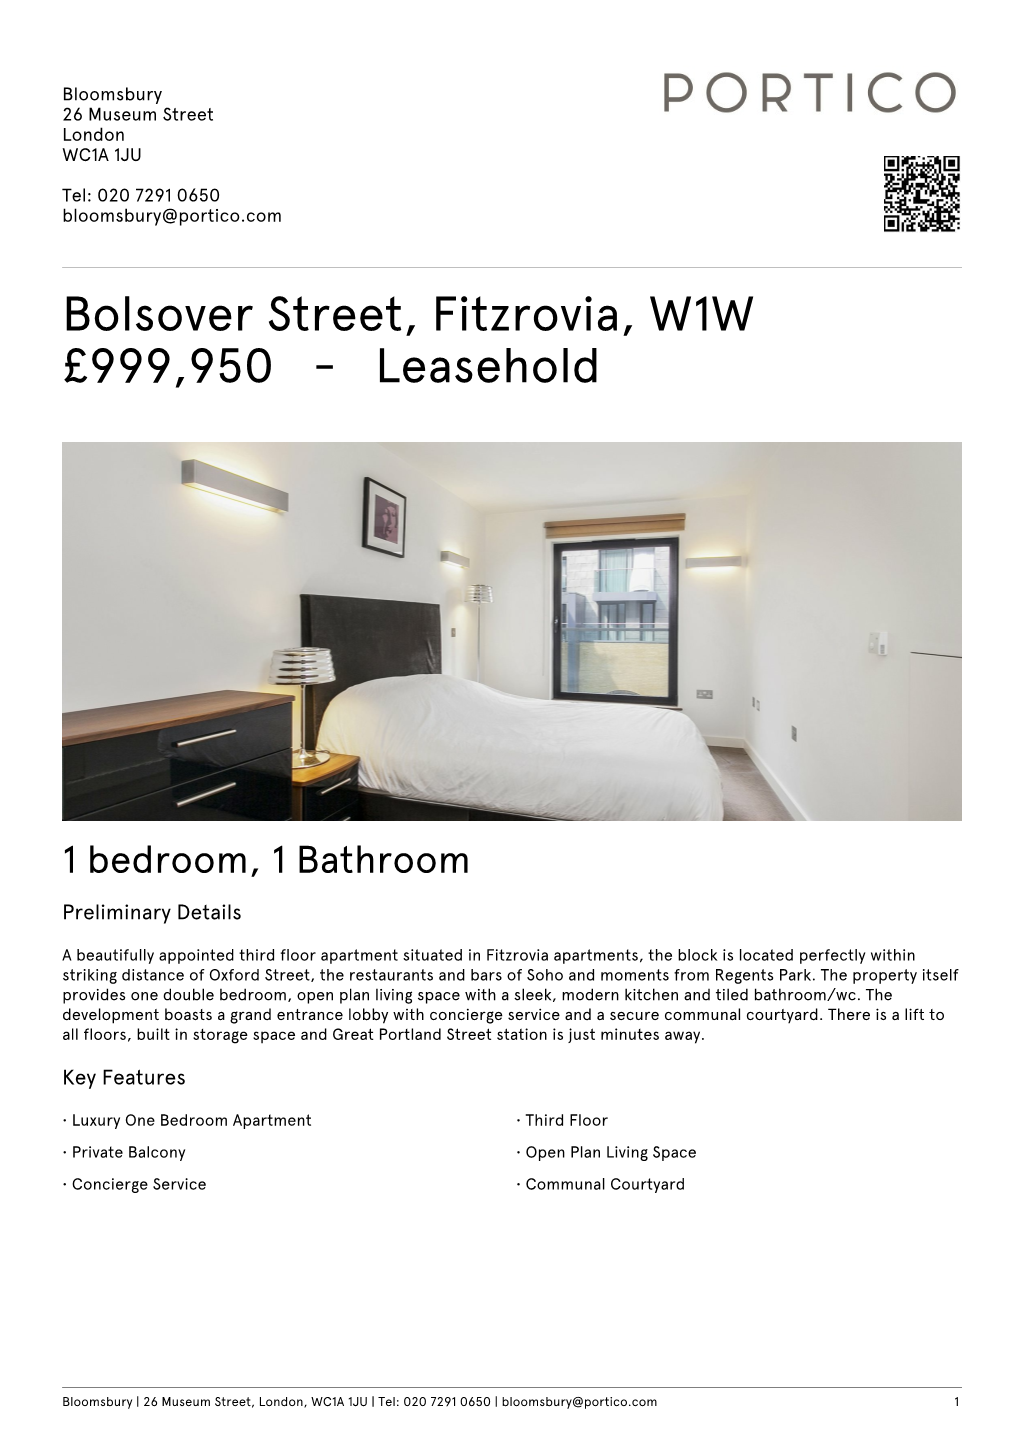 Bolsover Street, Fitzrovia, W1W £999950